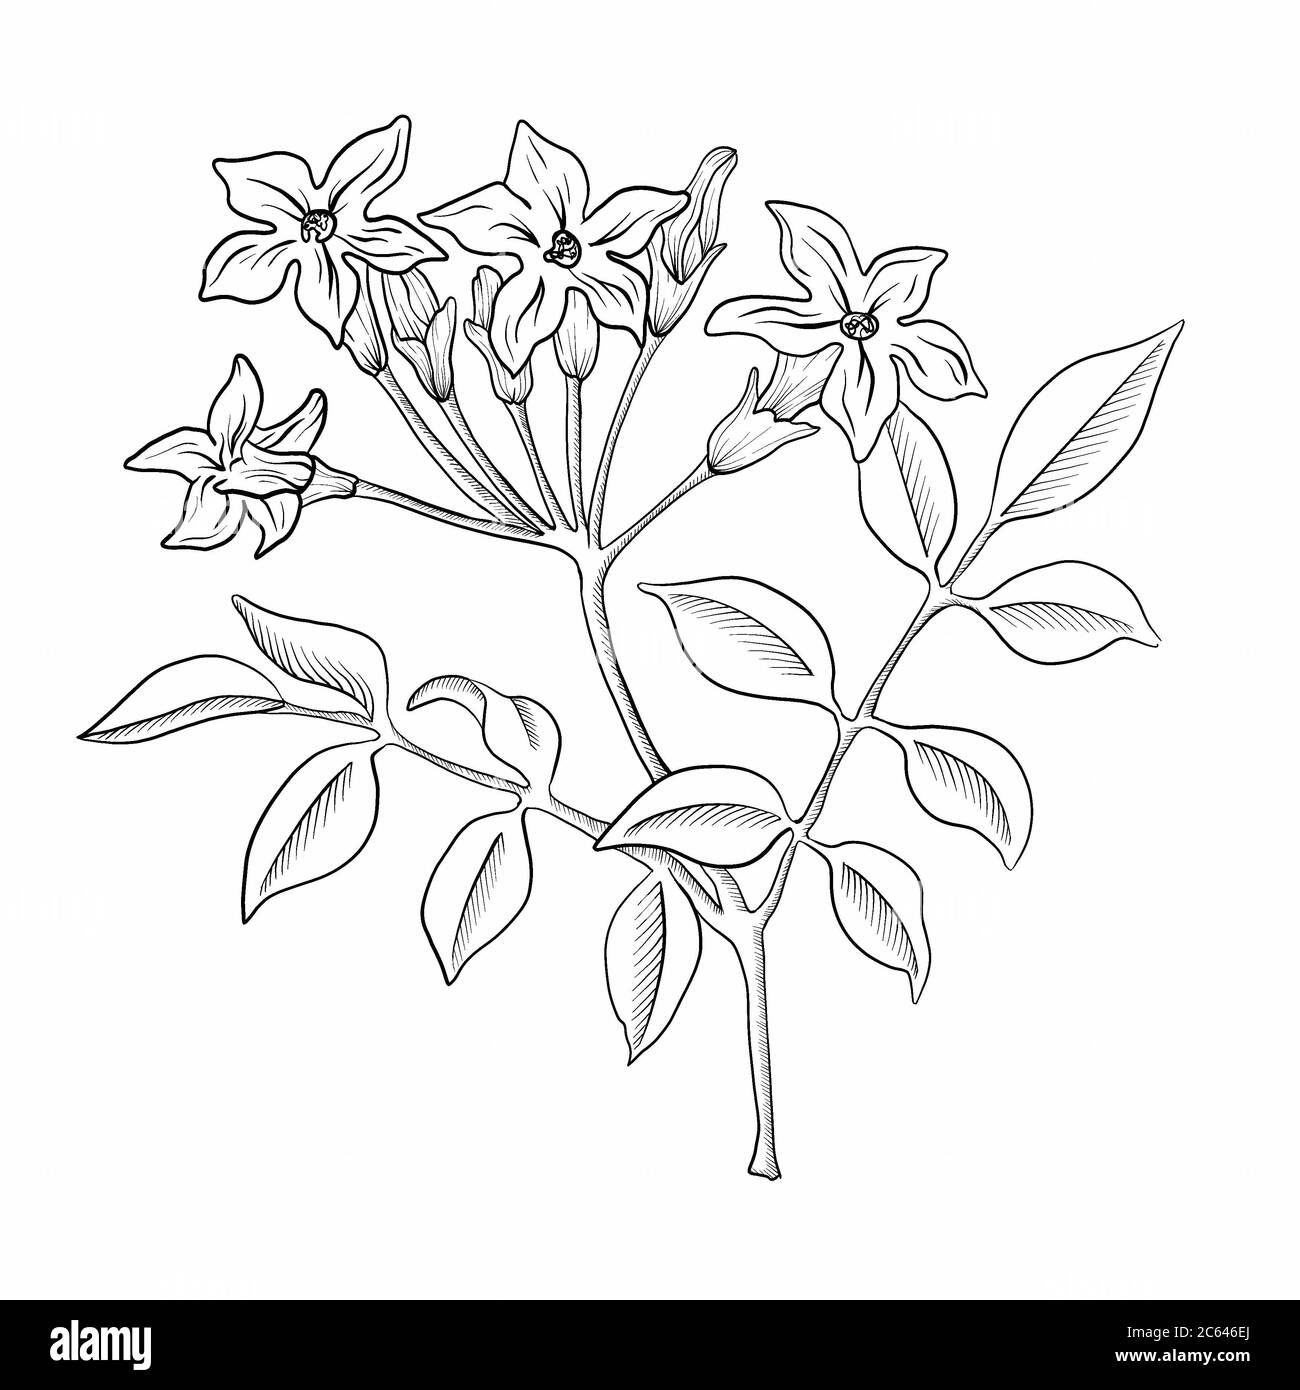 Share 73+ mogra flower drawing super hot - xkldase.edu.vn